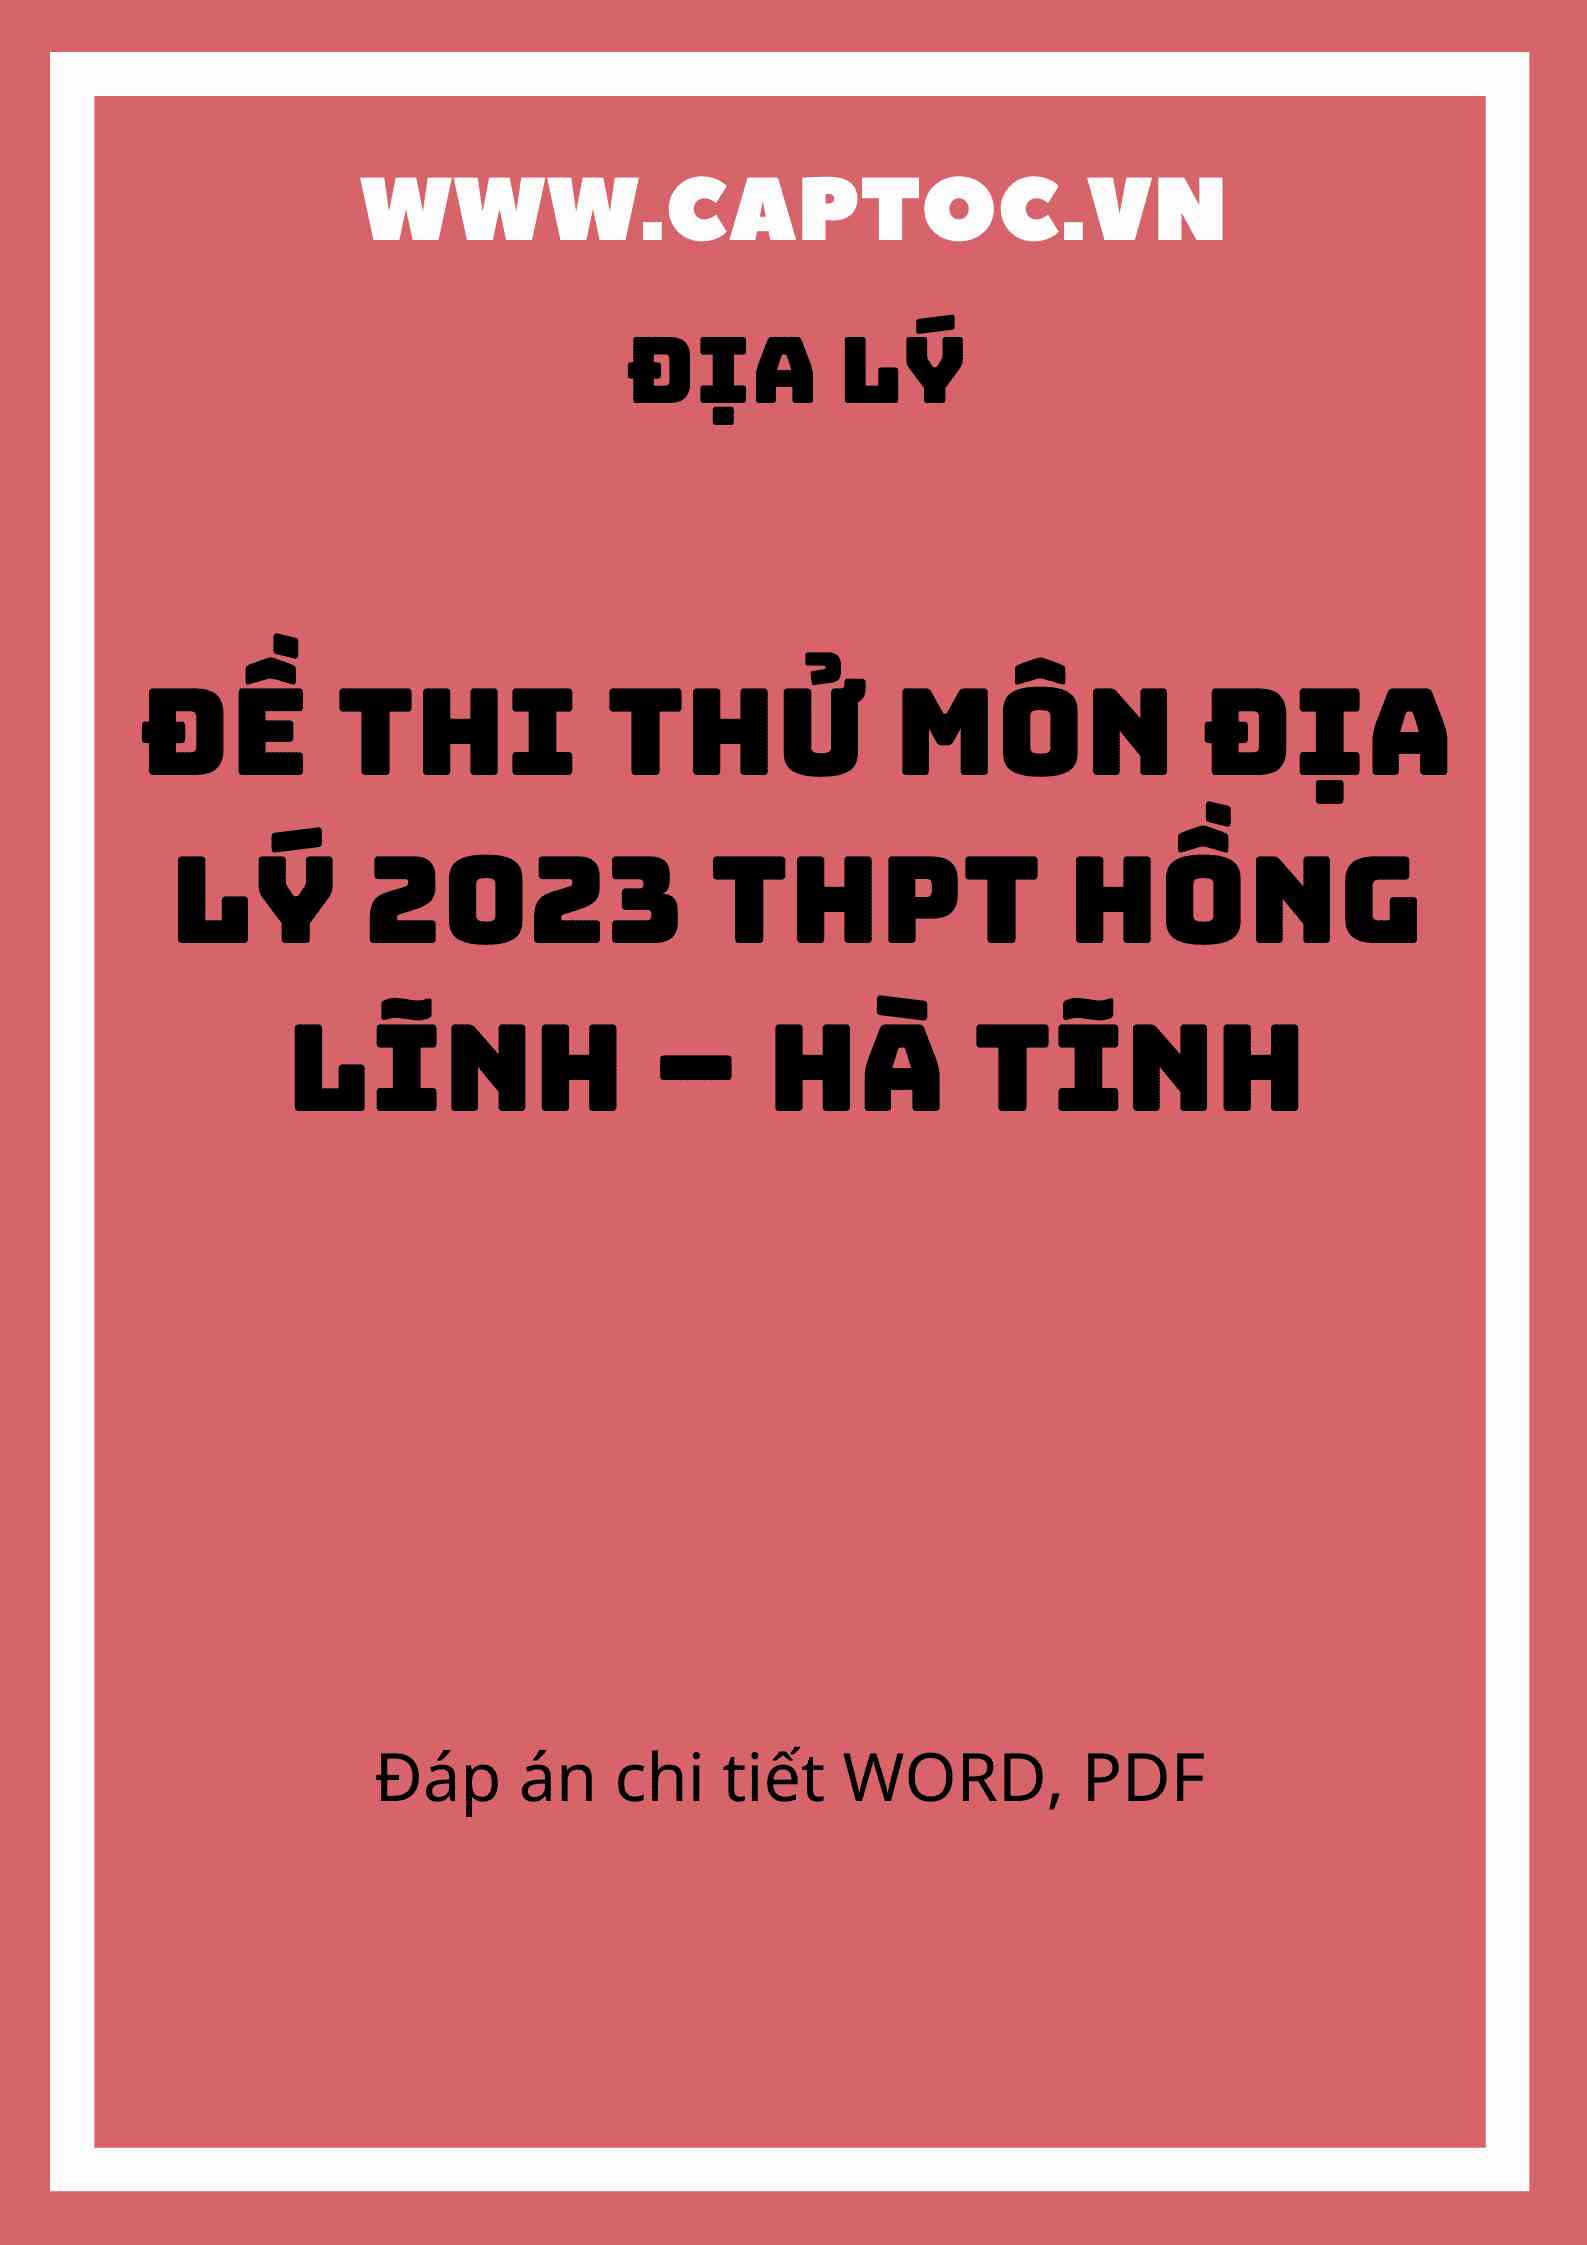 Đề thi thử môn Địa Lý 2023 THPT Hồng Lĩnh – Hà Tĩnh